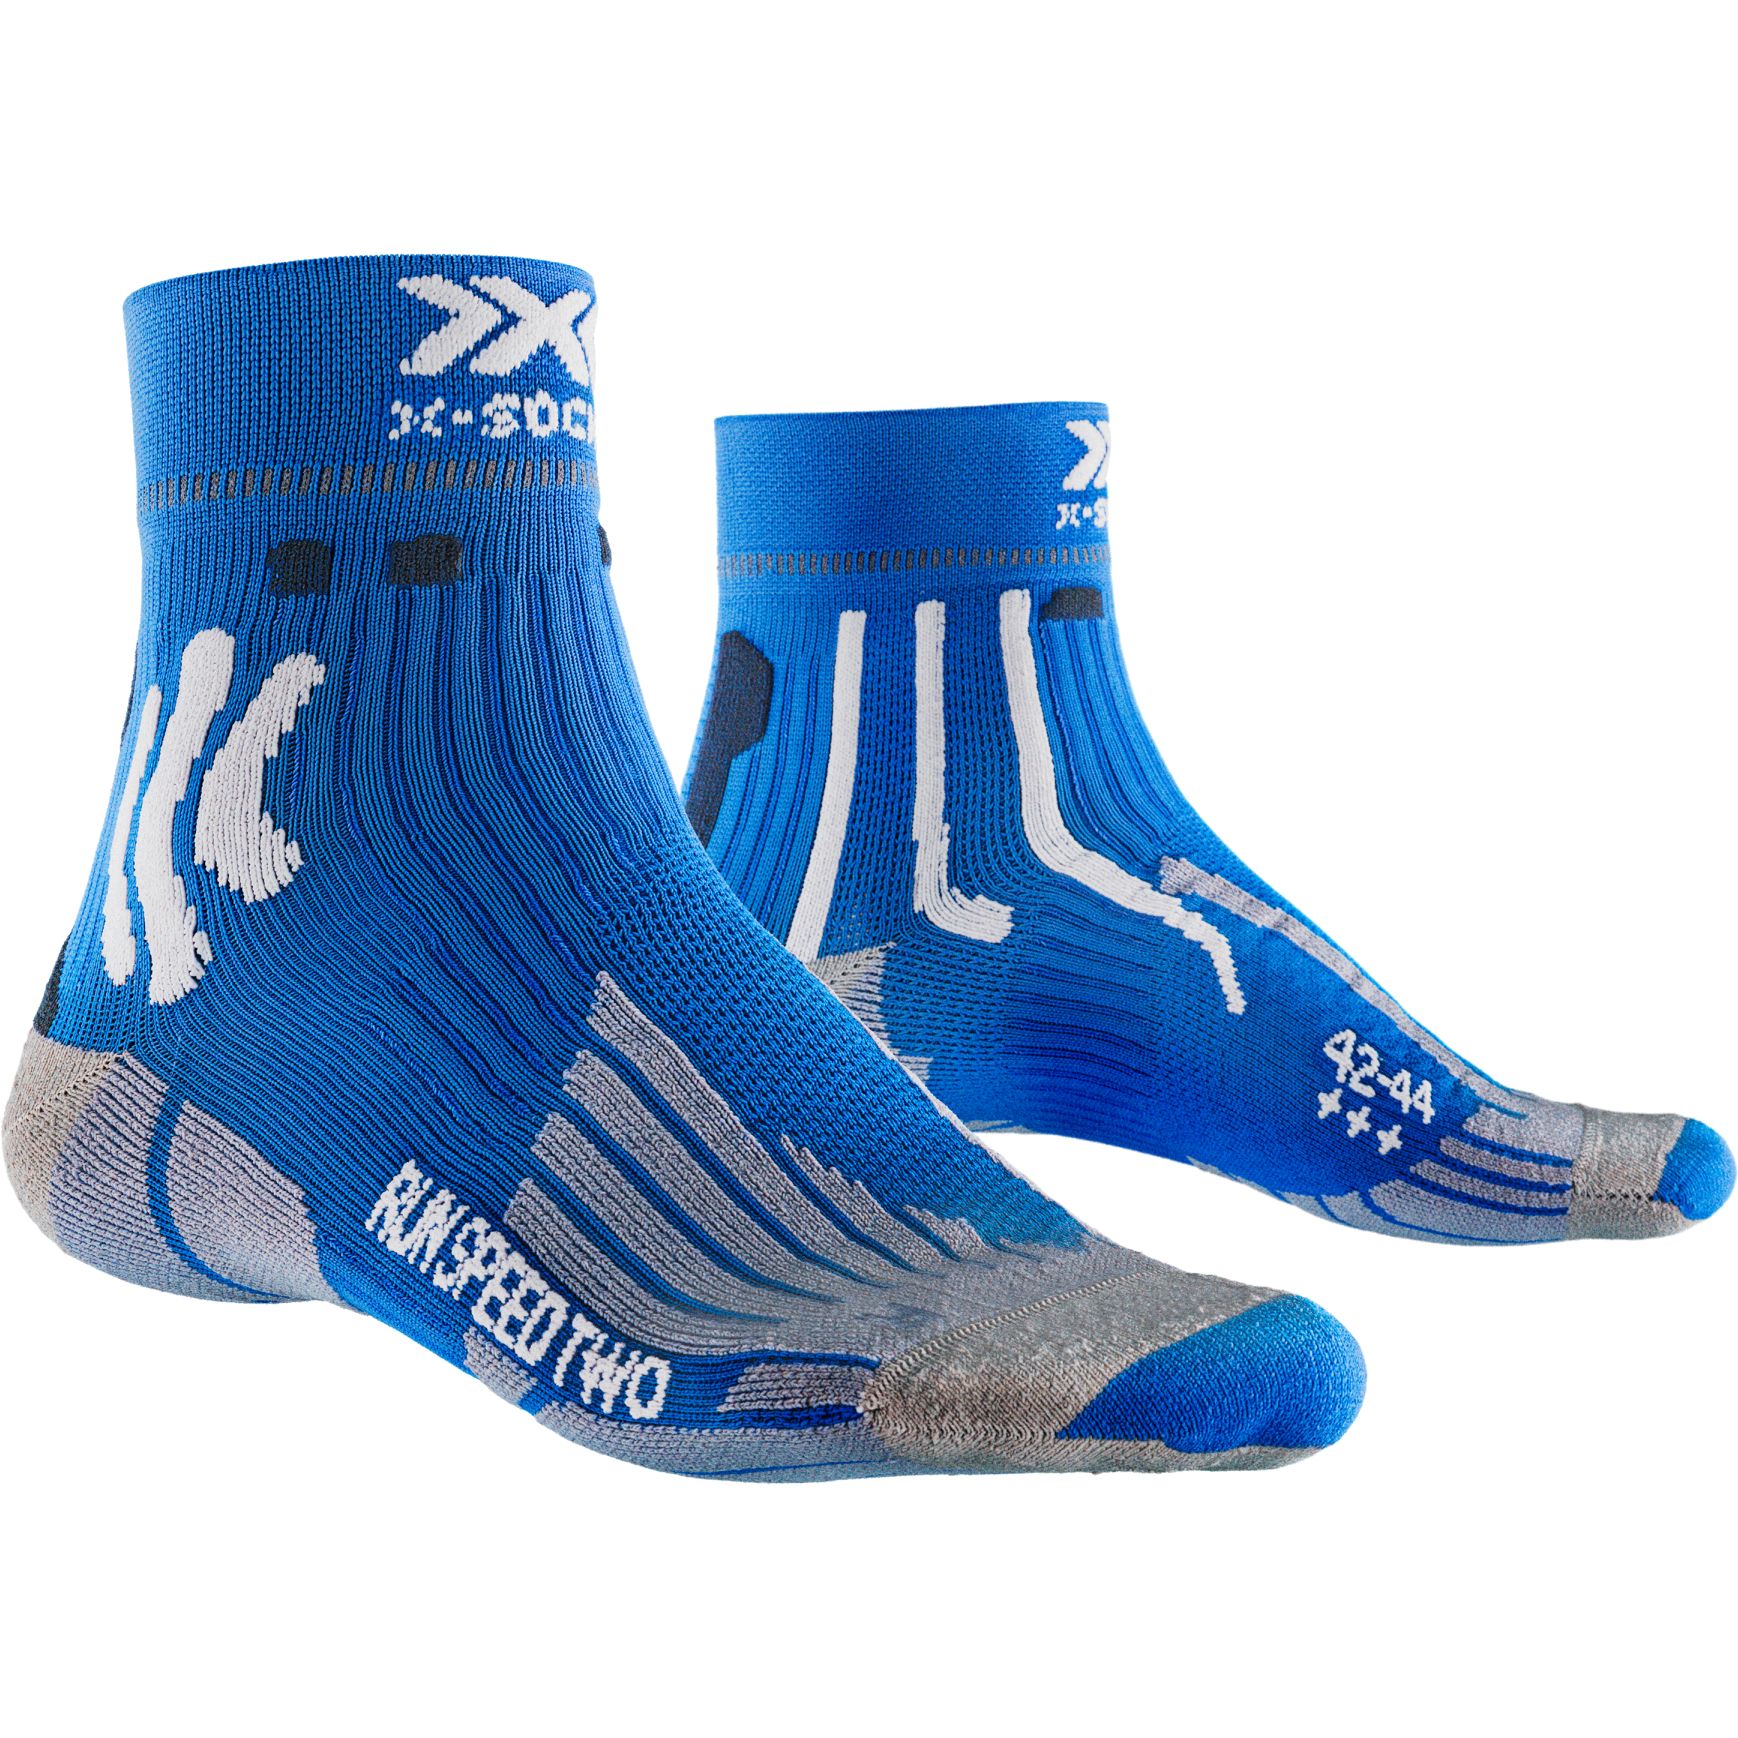 Produktbild von X-Socks Run Speed Two 4.0 Laufsocken - twyce blue/arctic white